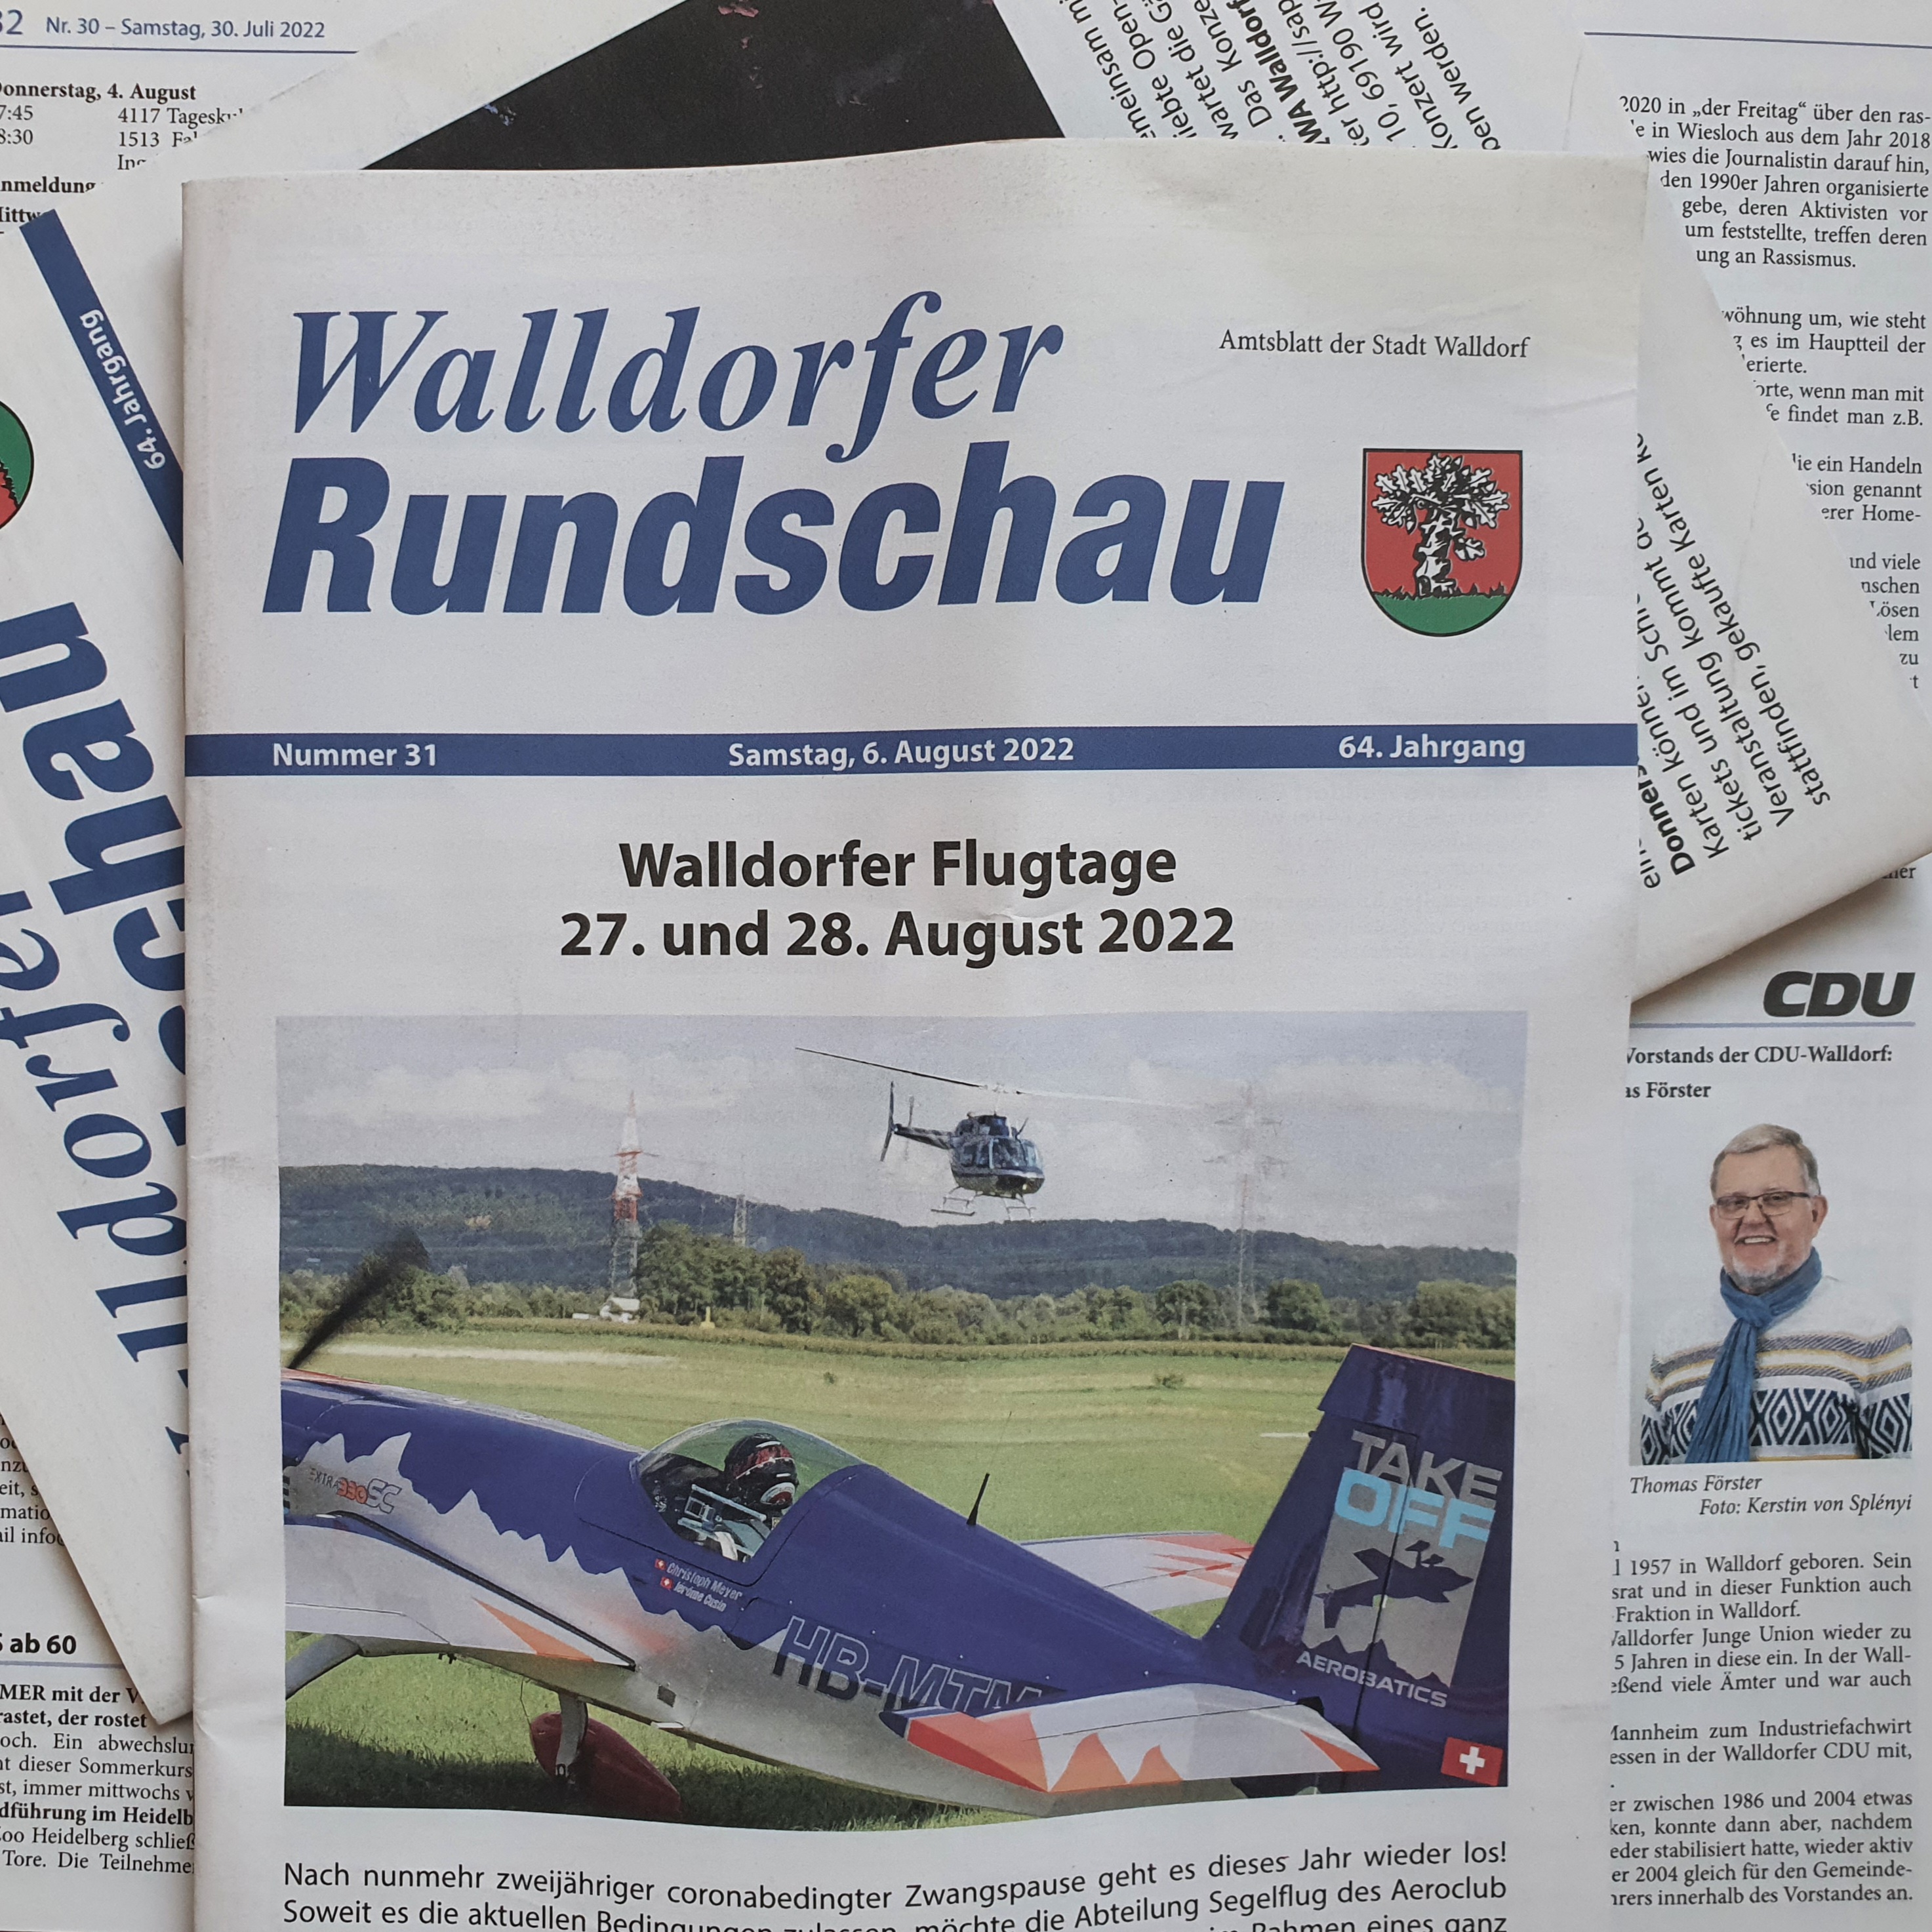 Die Walldorfer Rundschau 2022 Nr. 31 | Foto Dr. Clemens Kriesel